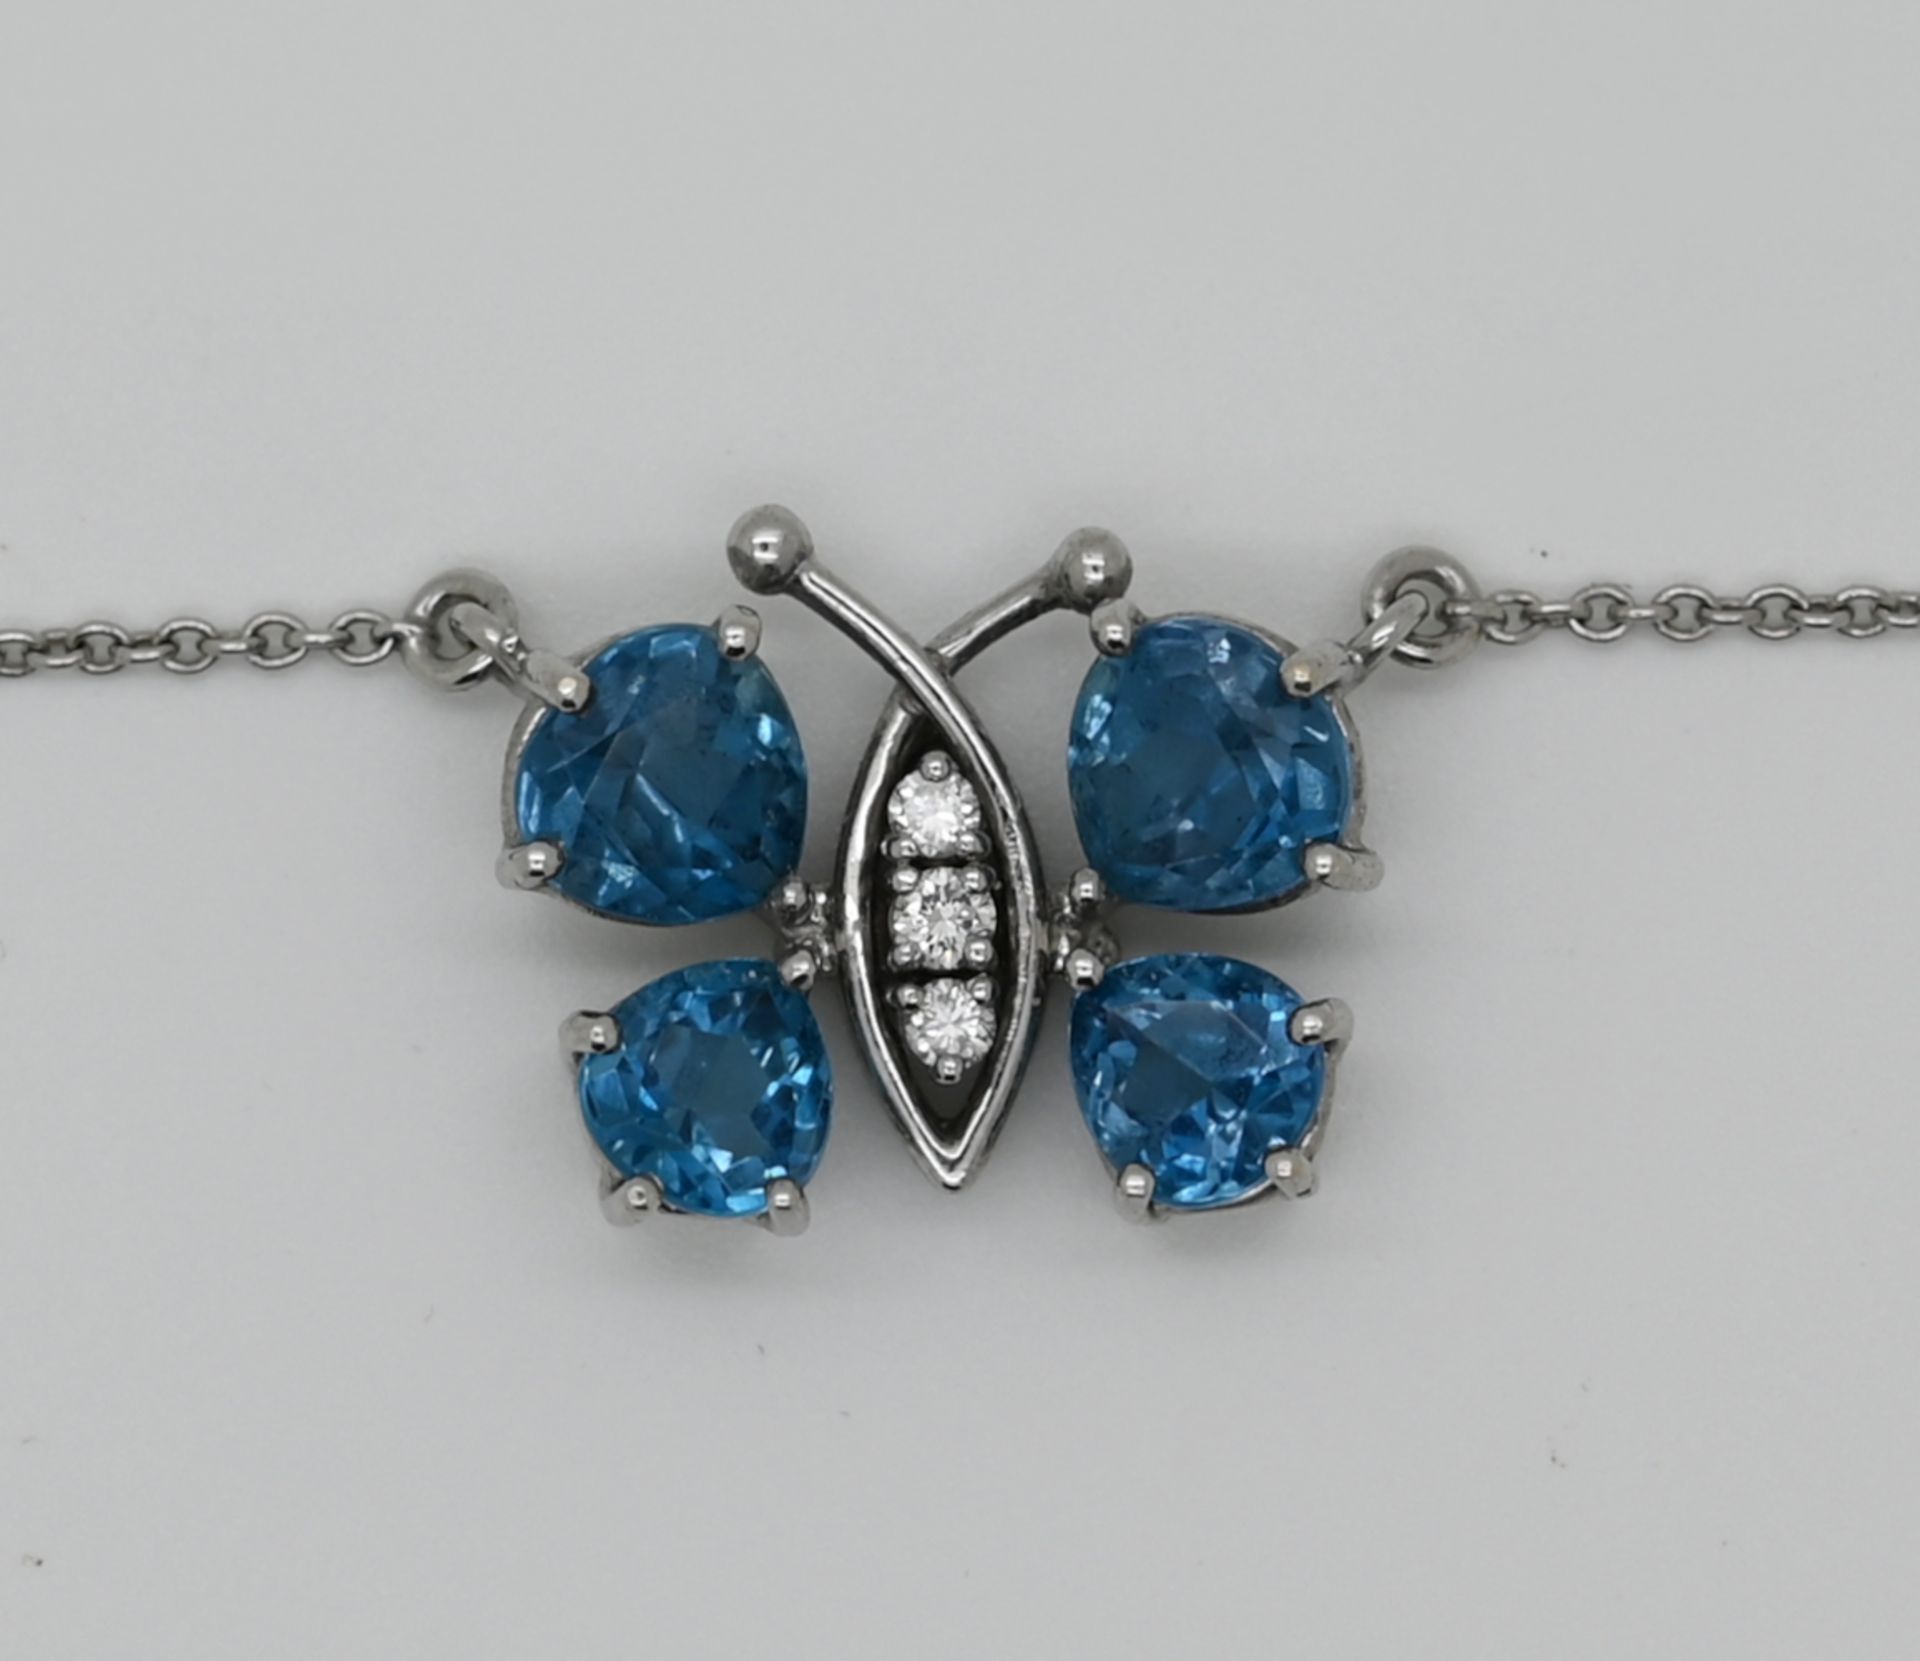 1 Collier WG 18ct., mit blauen und weißen Steinen, "Schmetterling", ca. 1,5 x 1,7cm, Tsp.